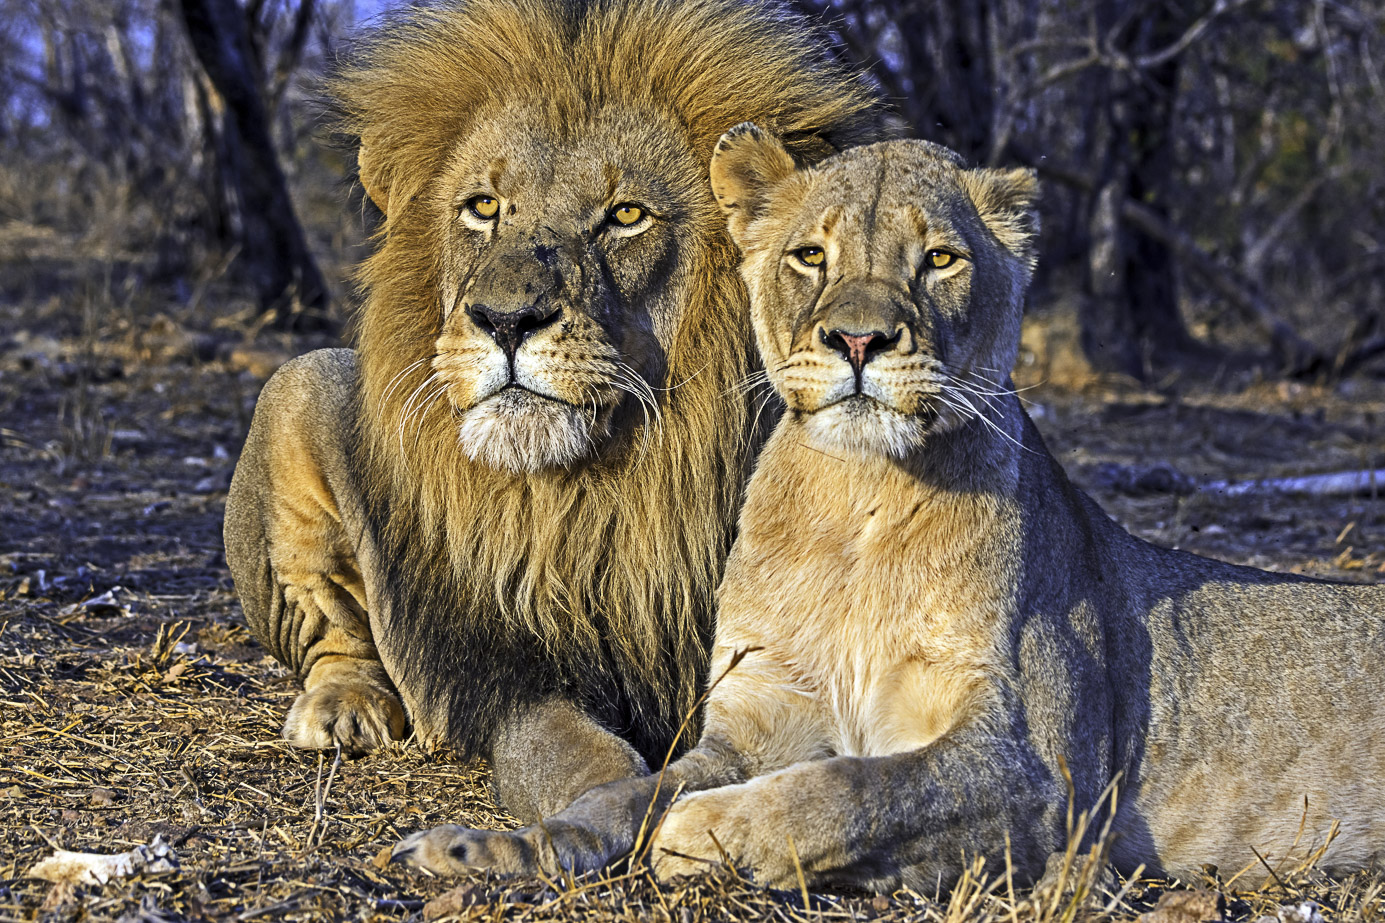 Zwei Löwen sitzend fotografiert von Benny Rebel auf einer Fotoreise in Südafrika